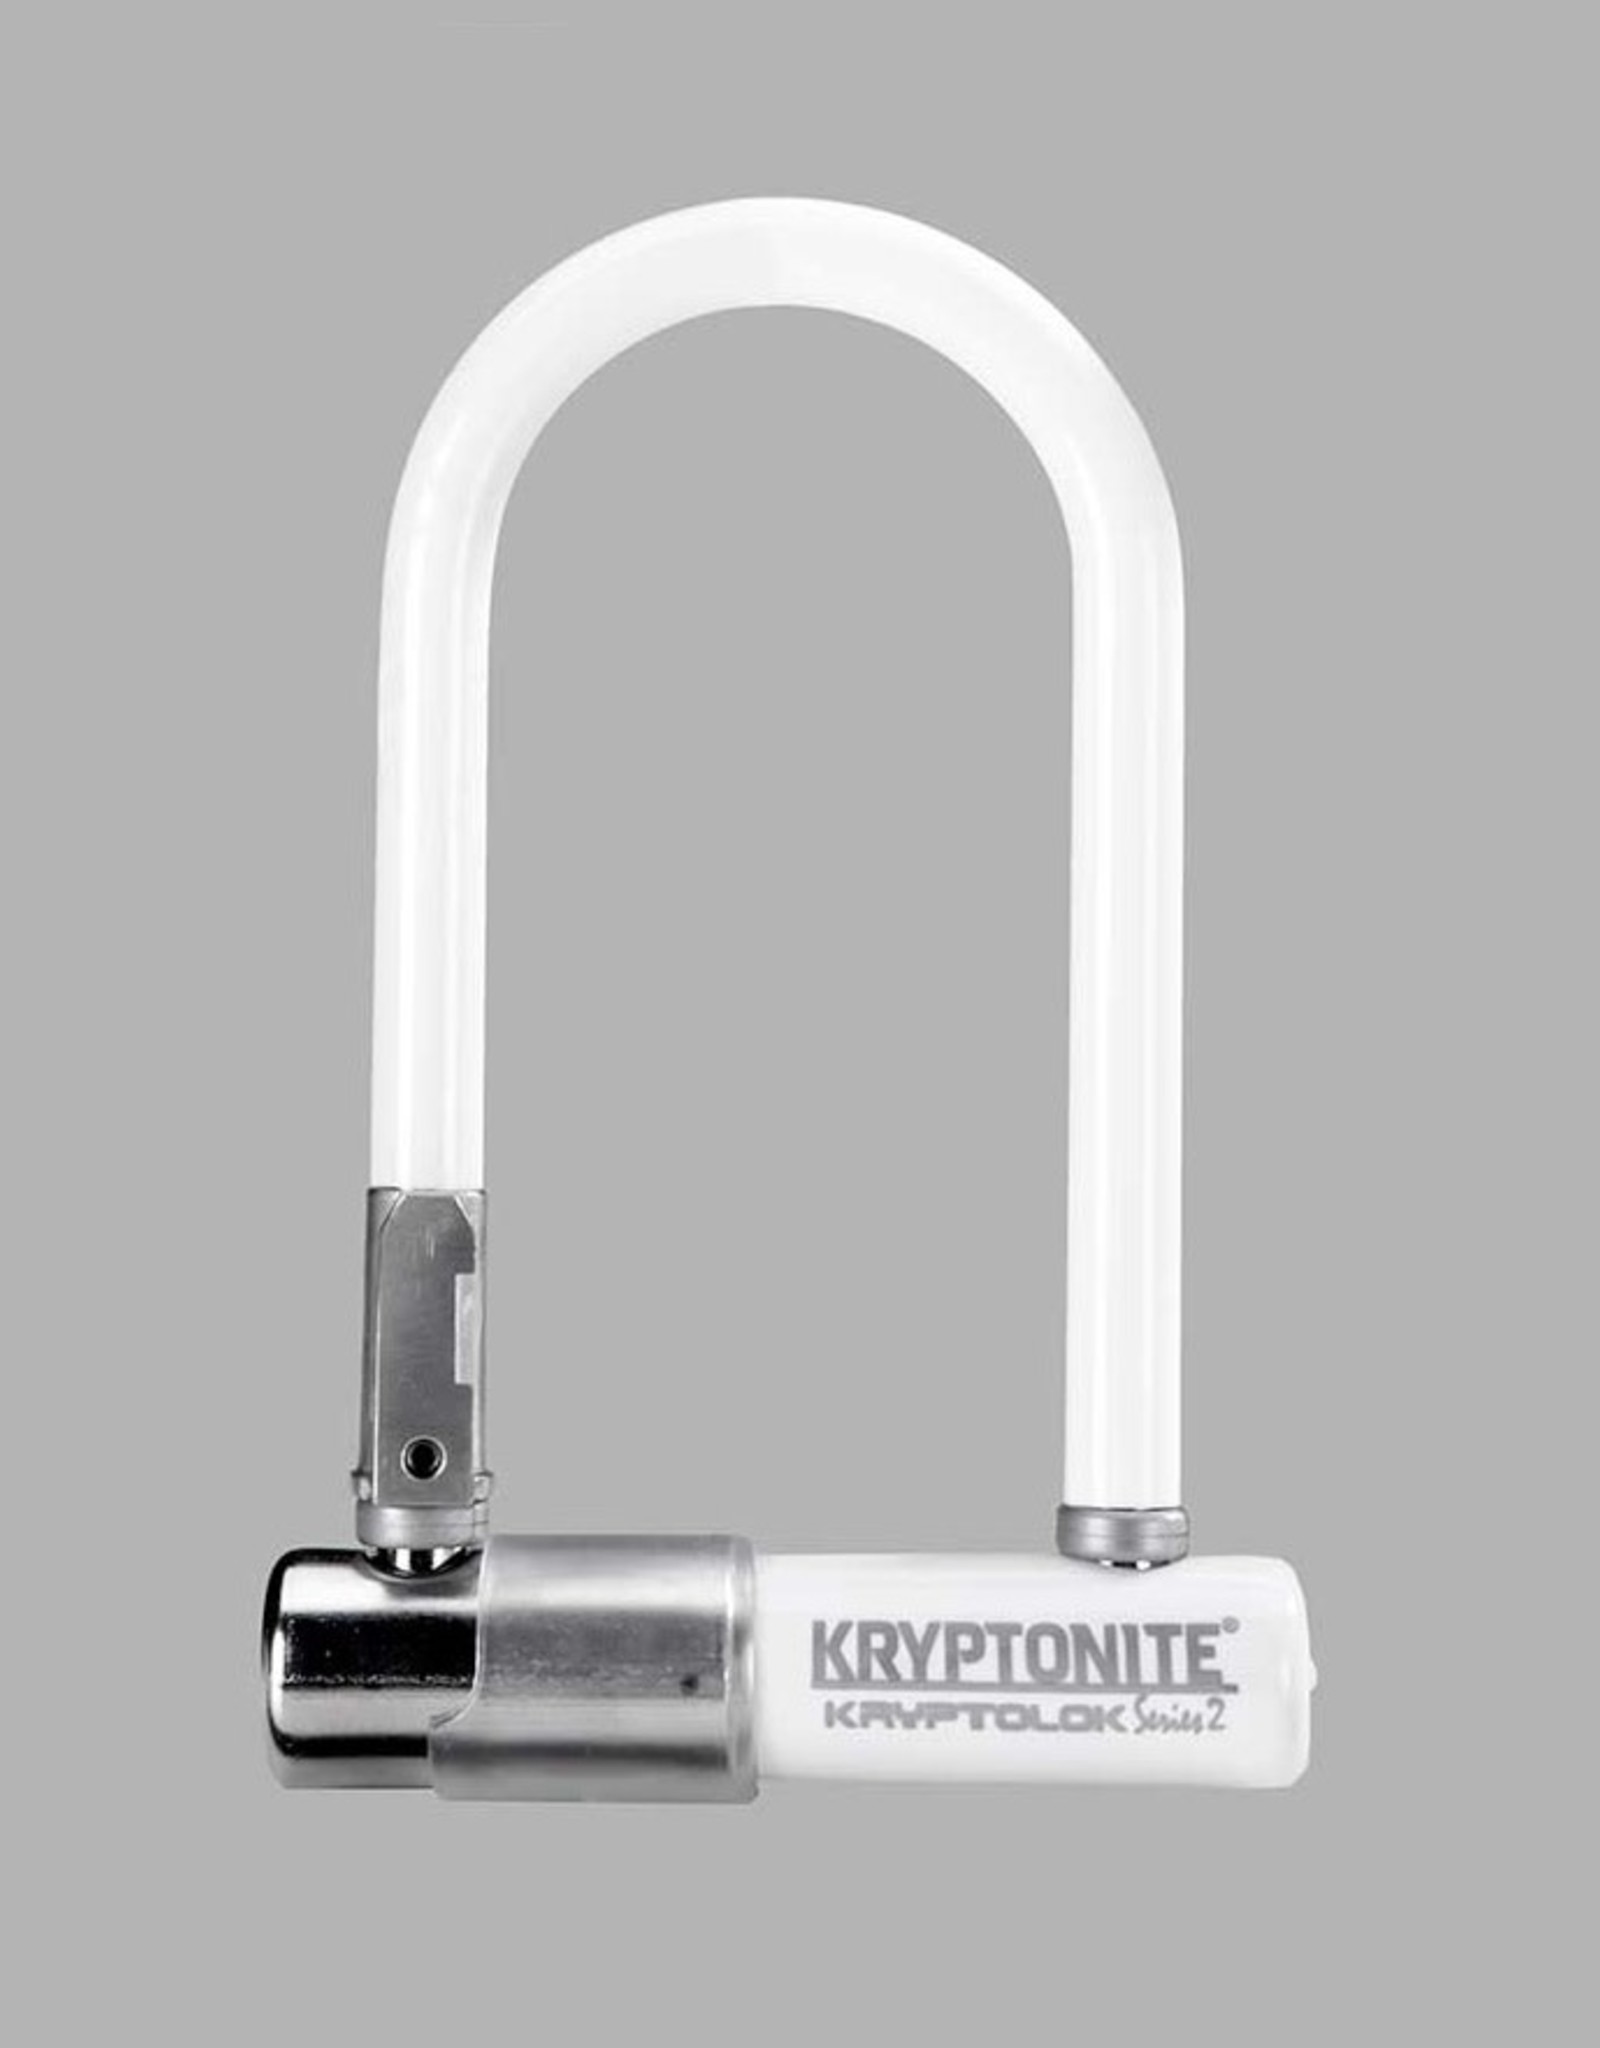 Kryptonite Lock - Kryptonite KryptoLok Series 2 Mini 7